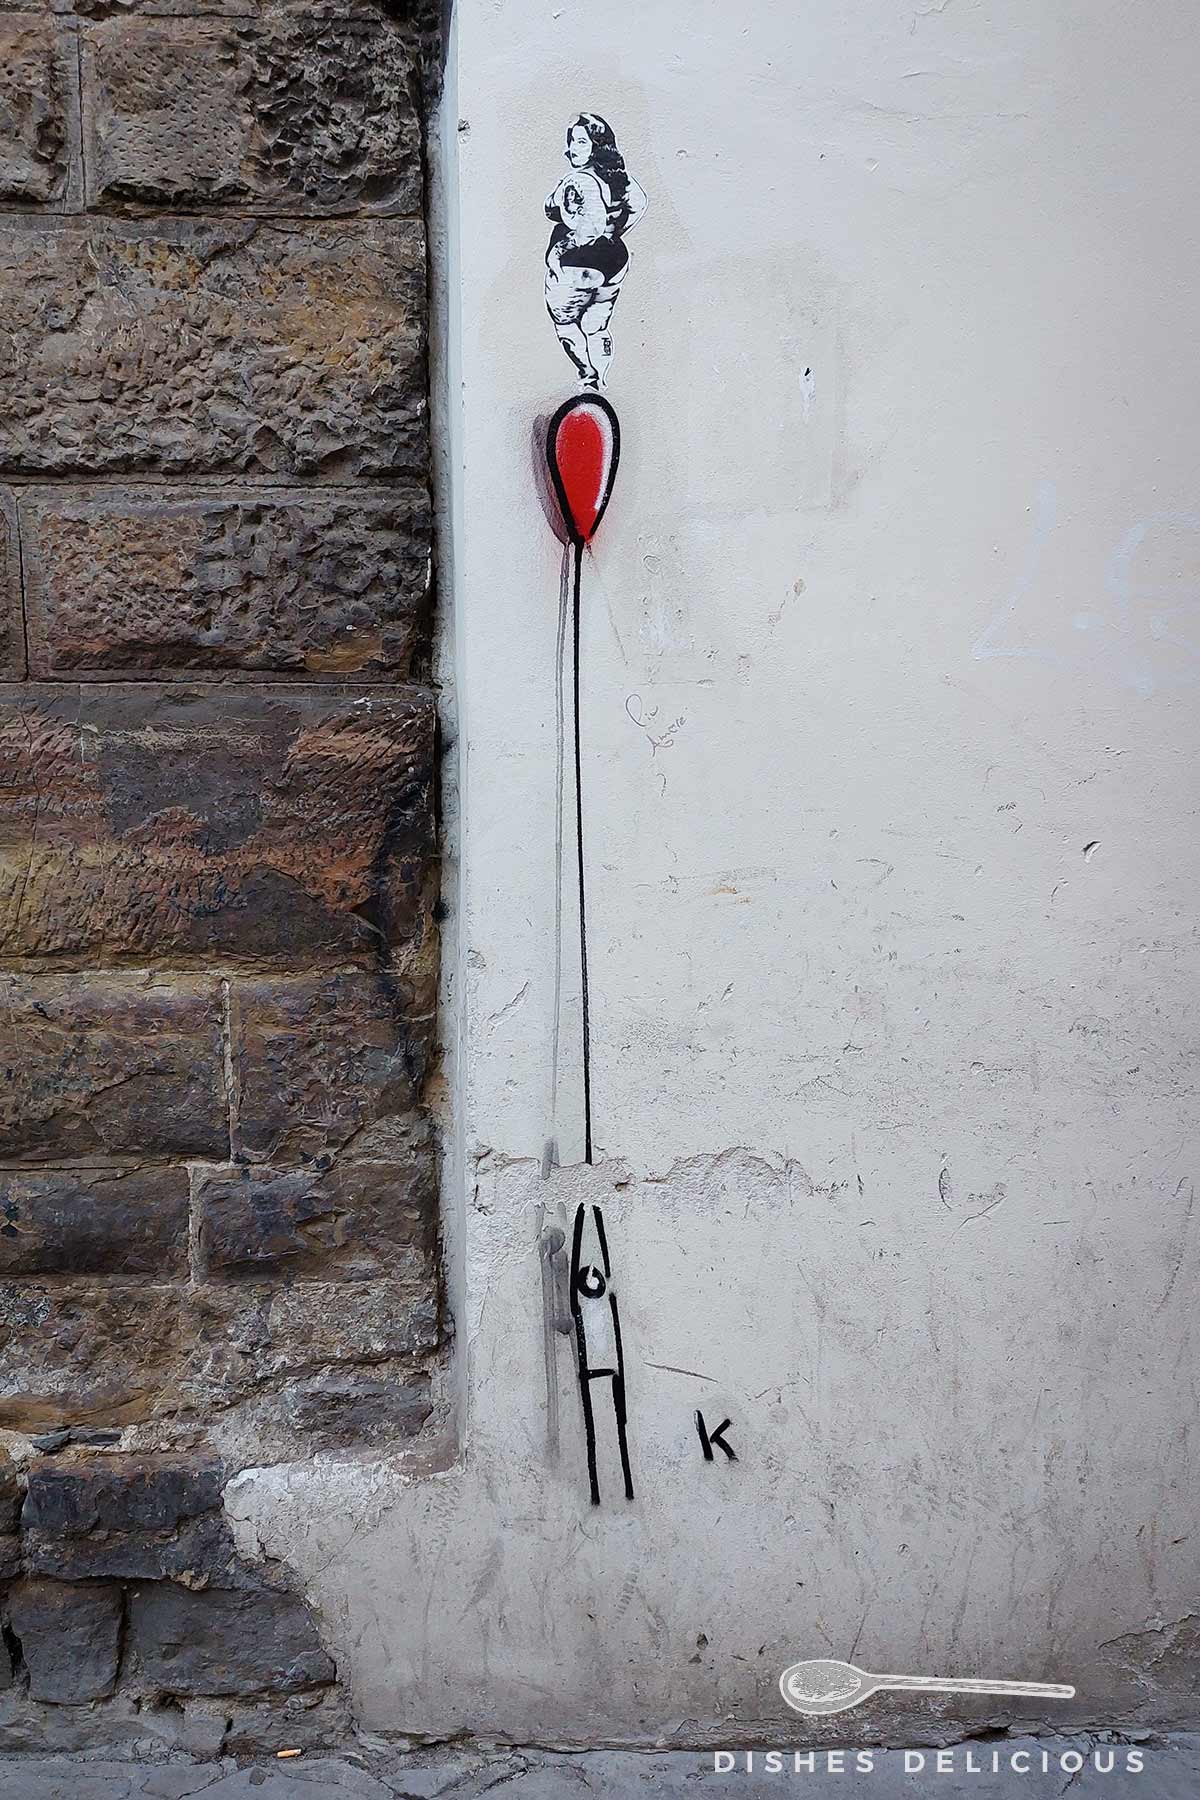 Street Art in Florenz: ein Männchen hält einen roten Ballon, auf dem eine Frau steht.